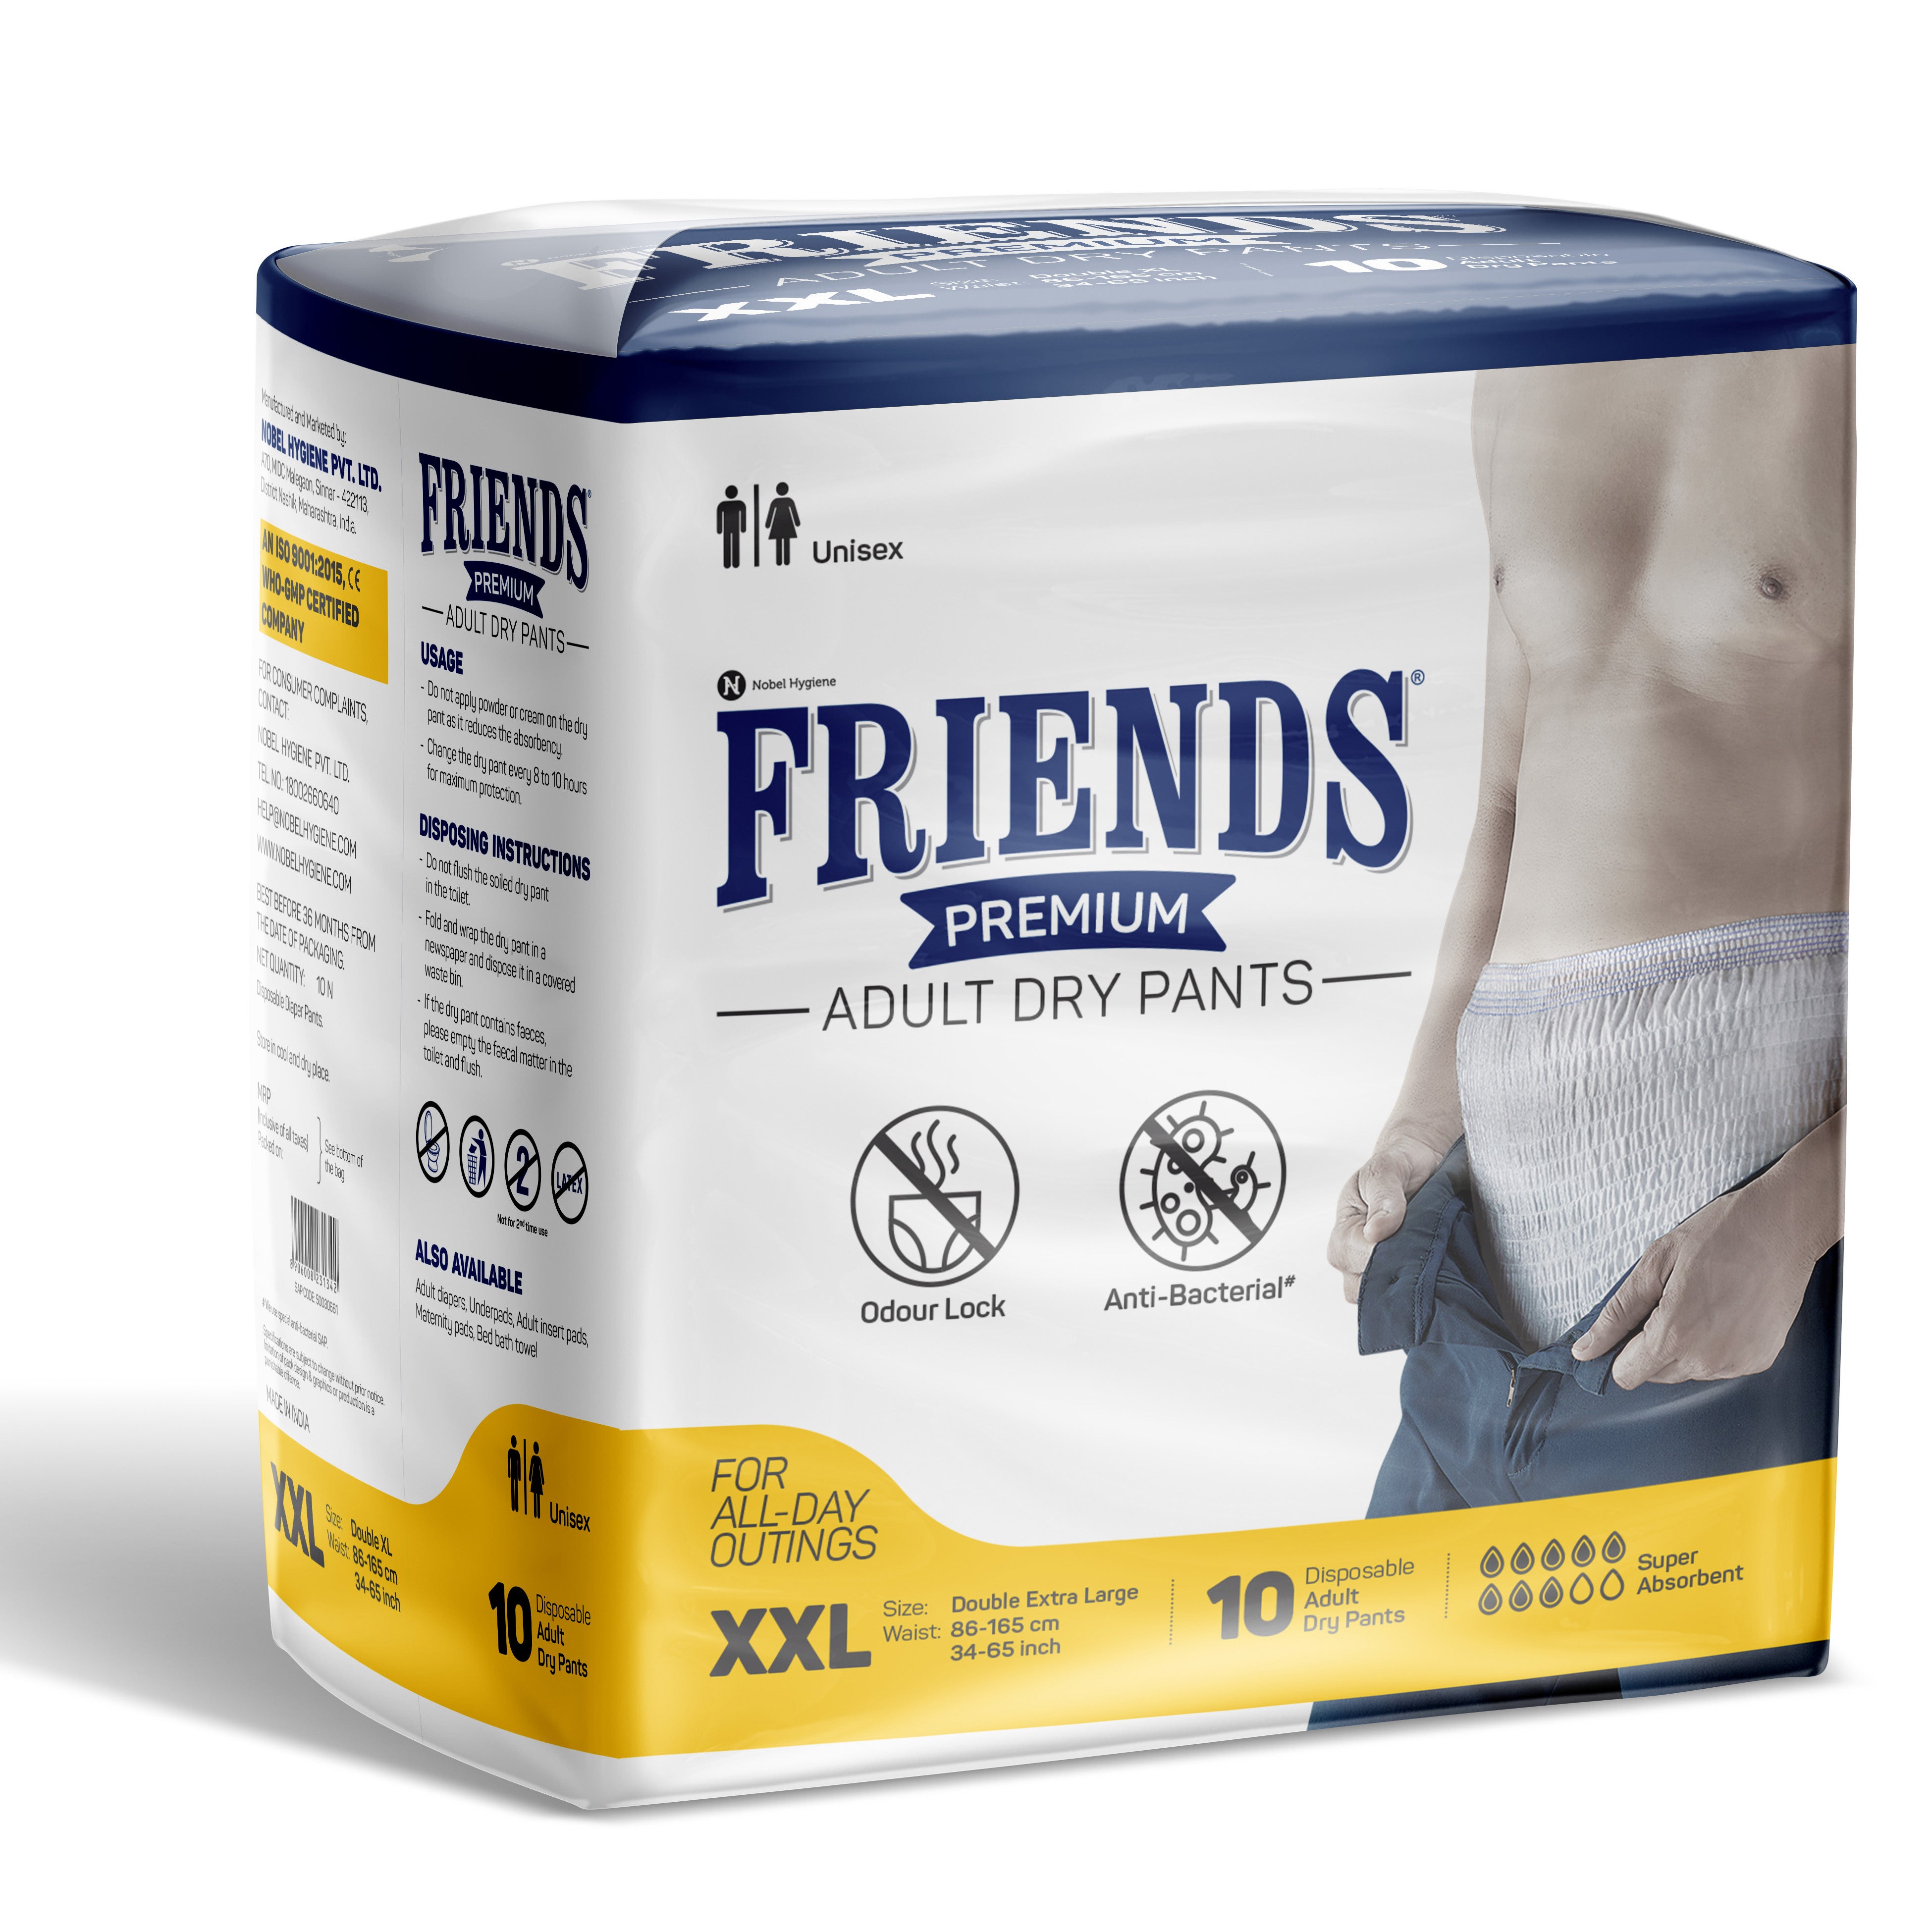 Friends Premium Adult Dry Pants + Premium Underpads Combo Pack